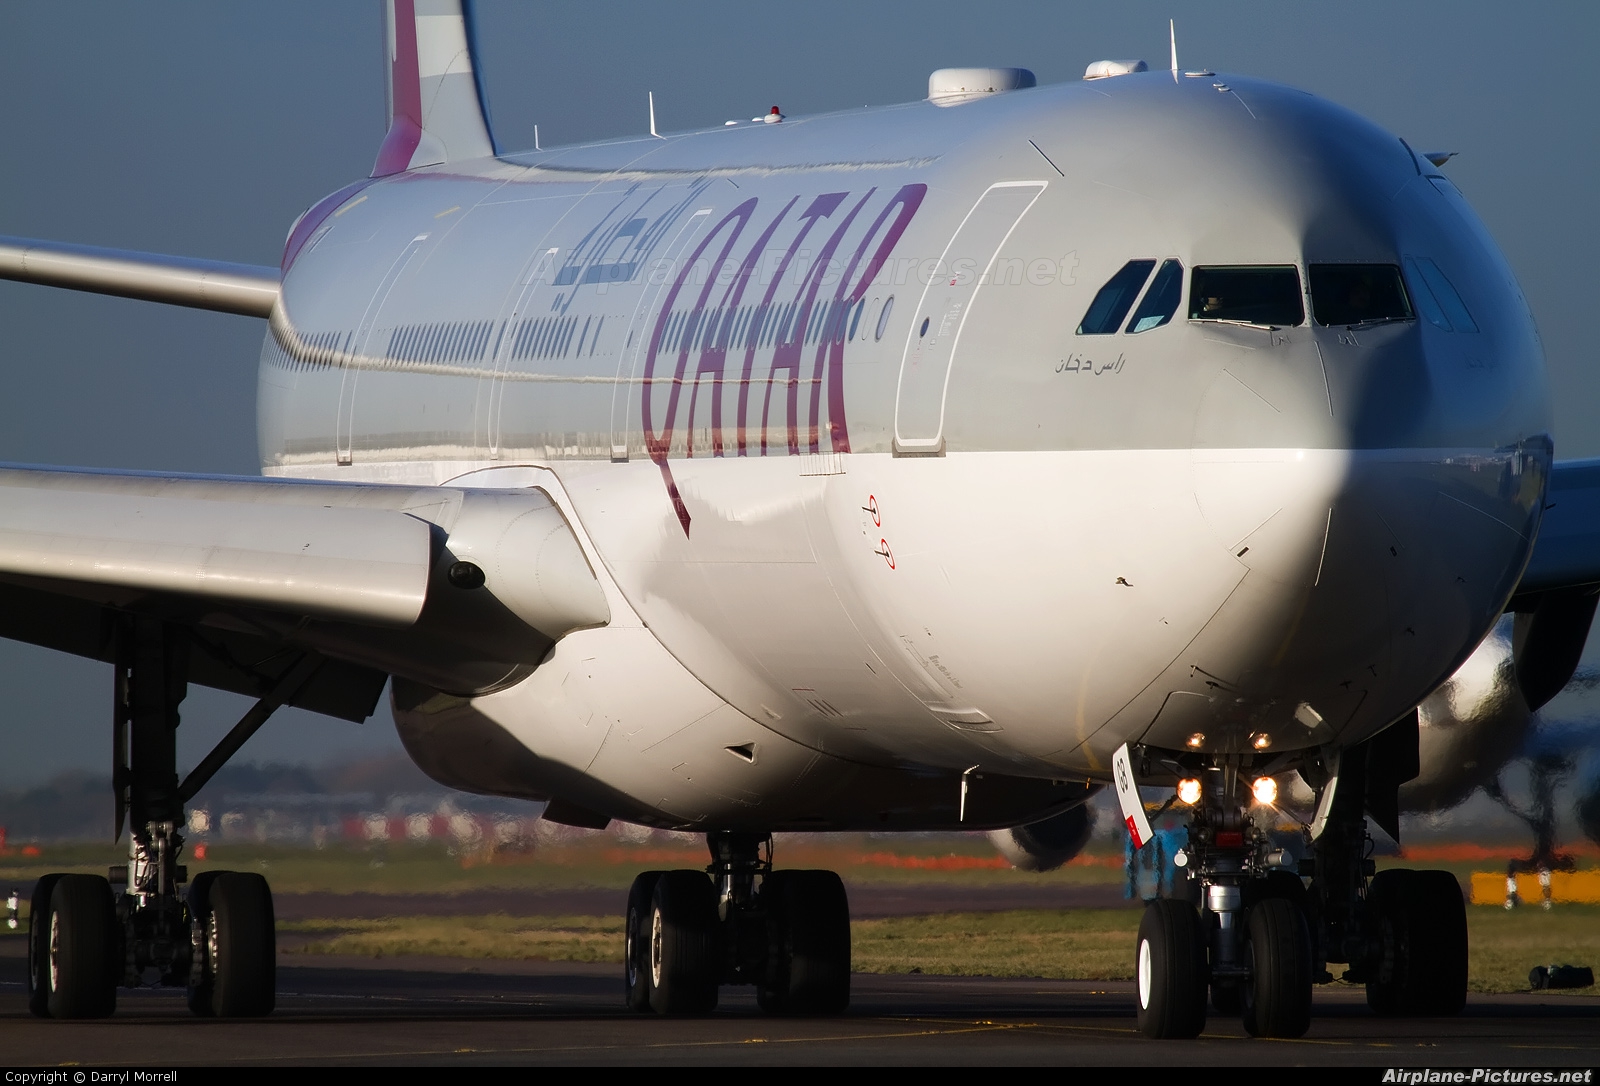 Qatar Airways A7-AGB aircraft at London - Heathrow